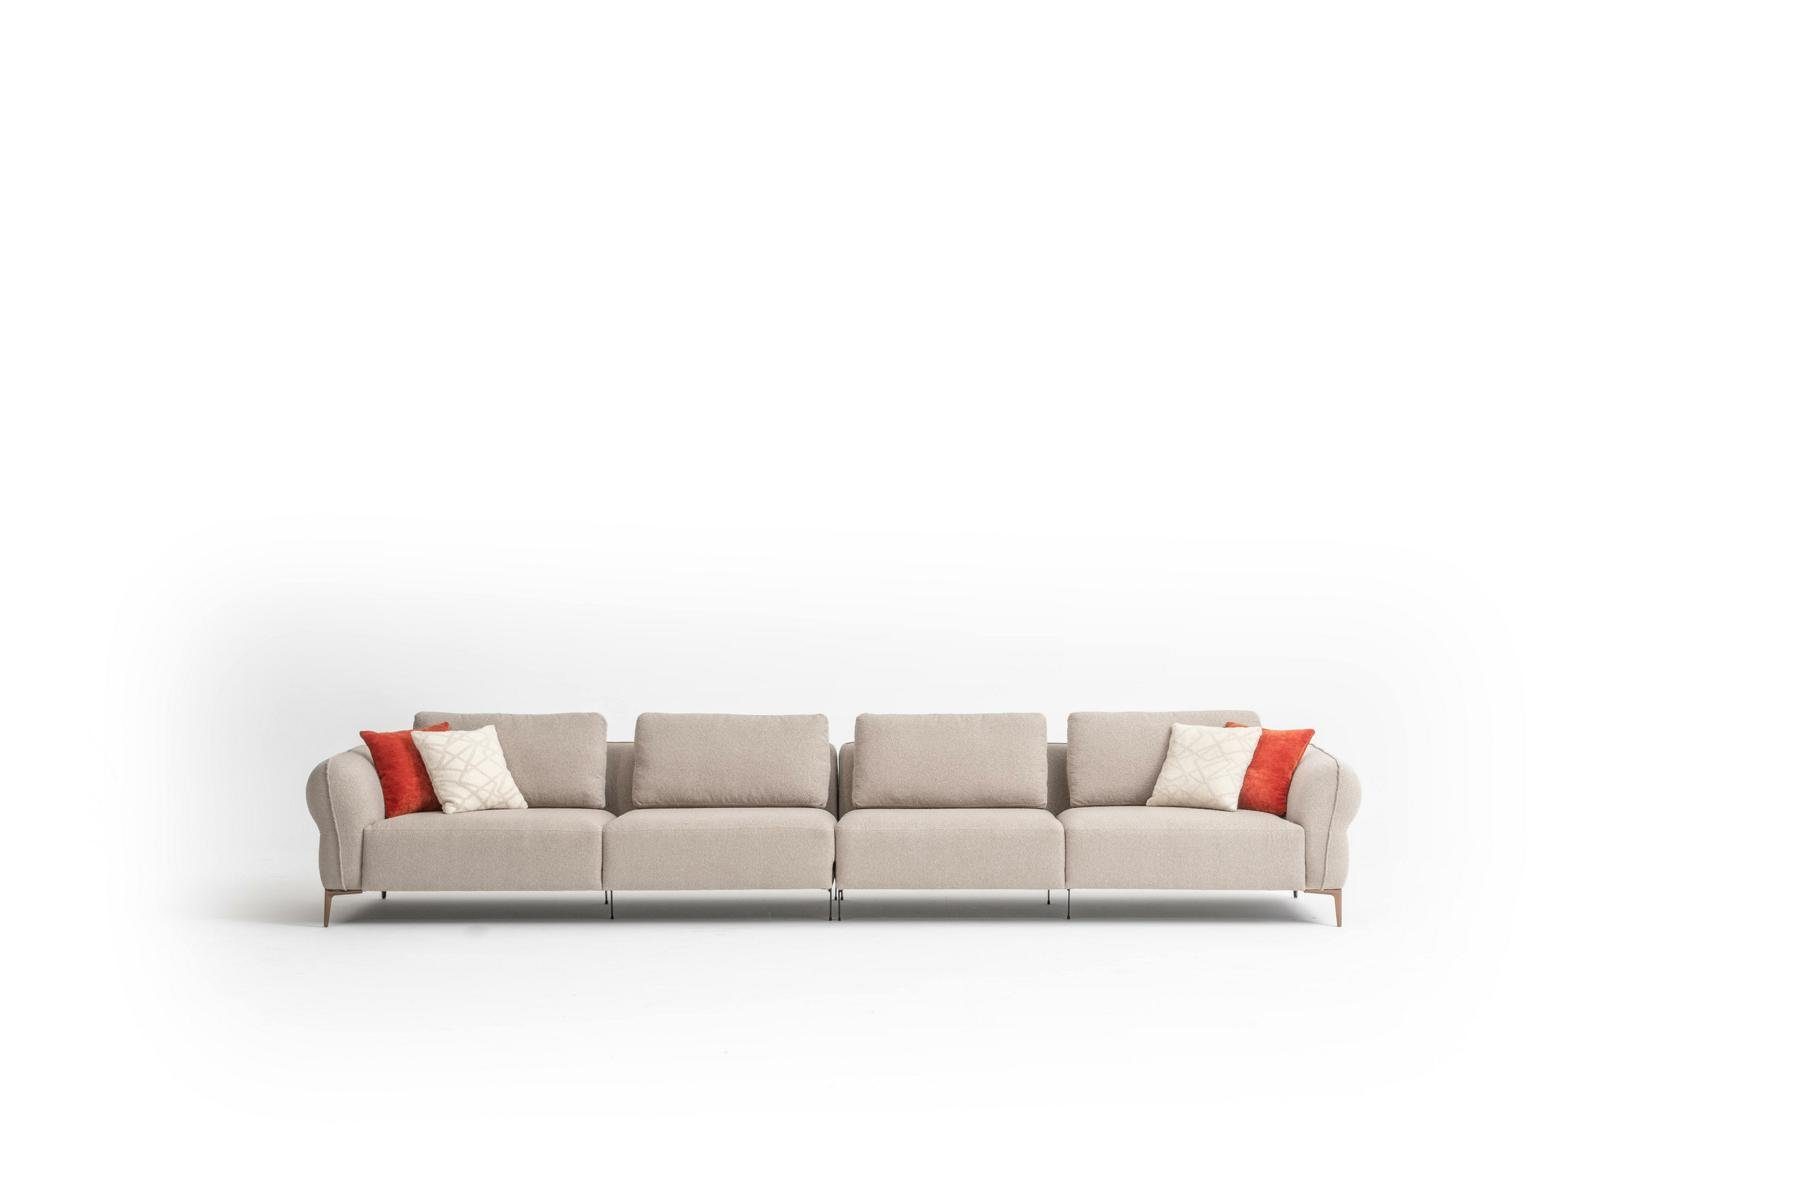 Big-Sofa Sofa Modern Made Polstersofa Sitzer Stil Neu, in Wohnzimmer Luxus Design JVmoebel 6 Europe